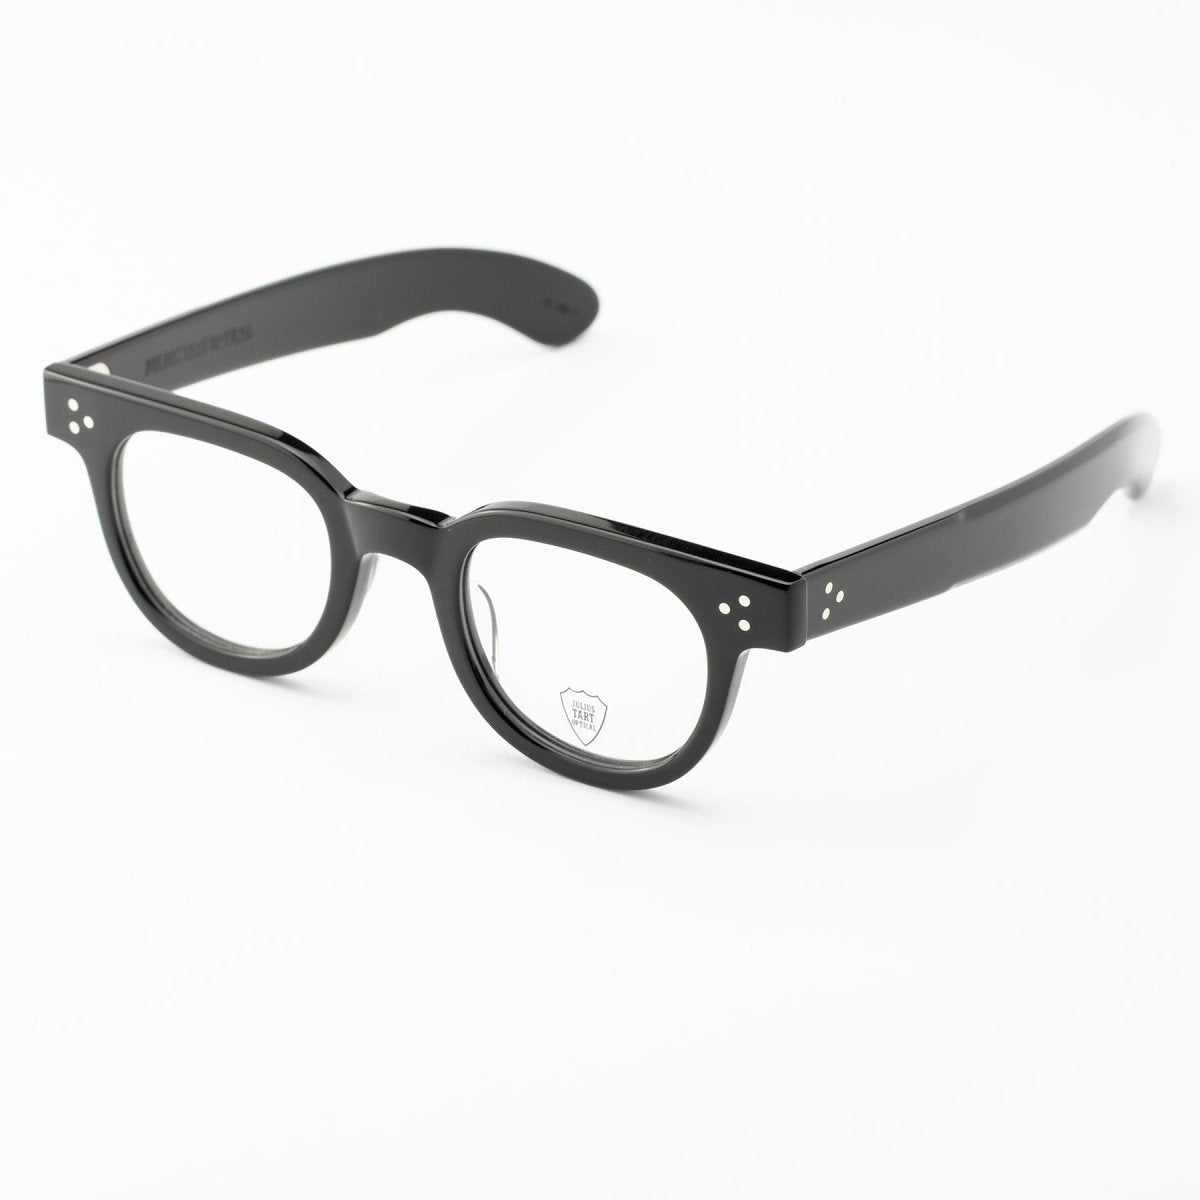 Optical Fdr, Julius Tart eyeglasses